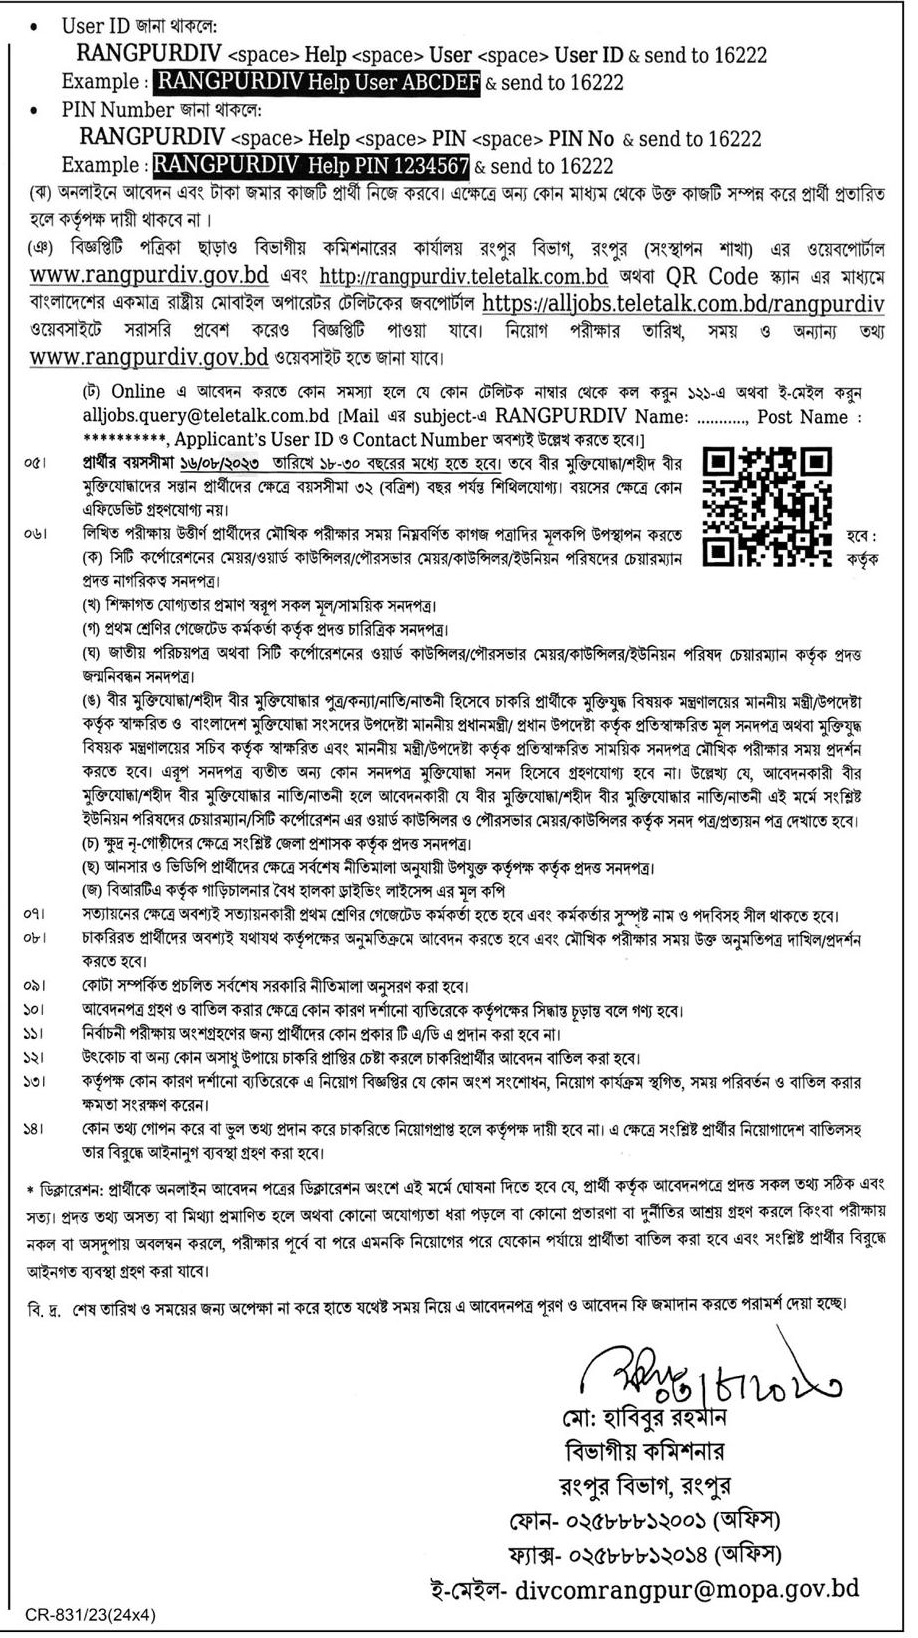 বিভাগীয় কমিশনারের কার্যালয় রংপুর নিয়োগ বিজ্ঞপ্তি ২০২৩ - Rangpur Divisional Commissioner's Office Job Circular 2023 -  rangpur division job circular 2023 - Rangpur job circular 2023 - রংপুর চাকরির খবর ২০২৩